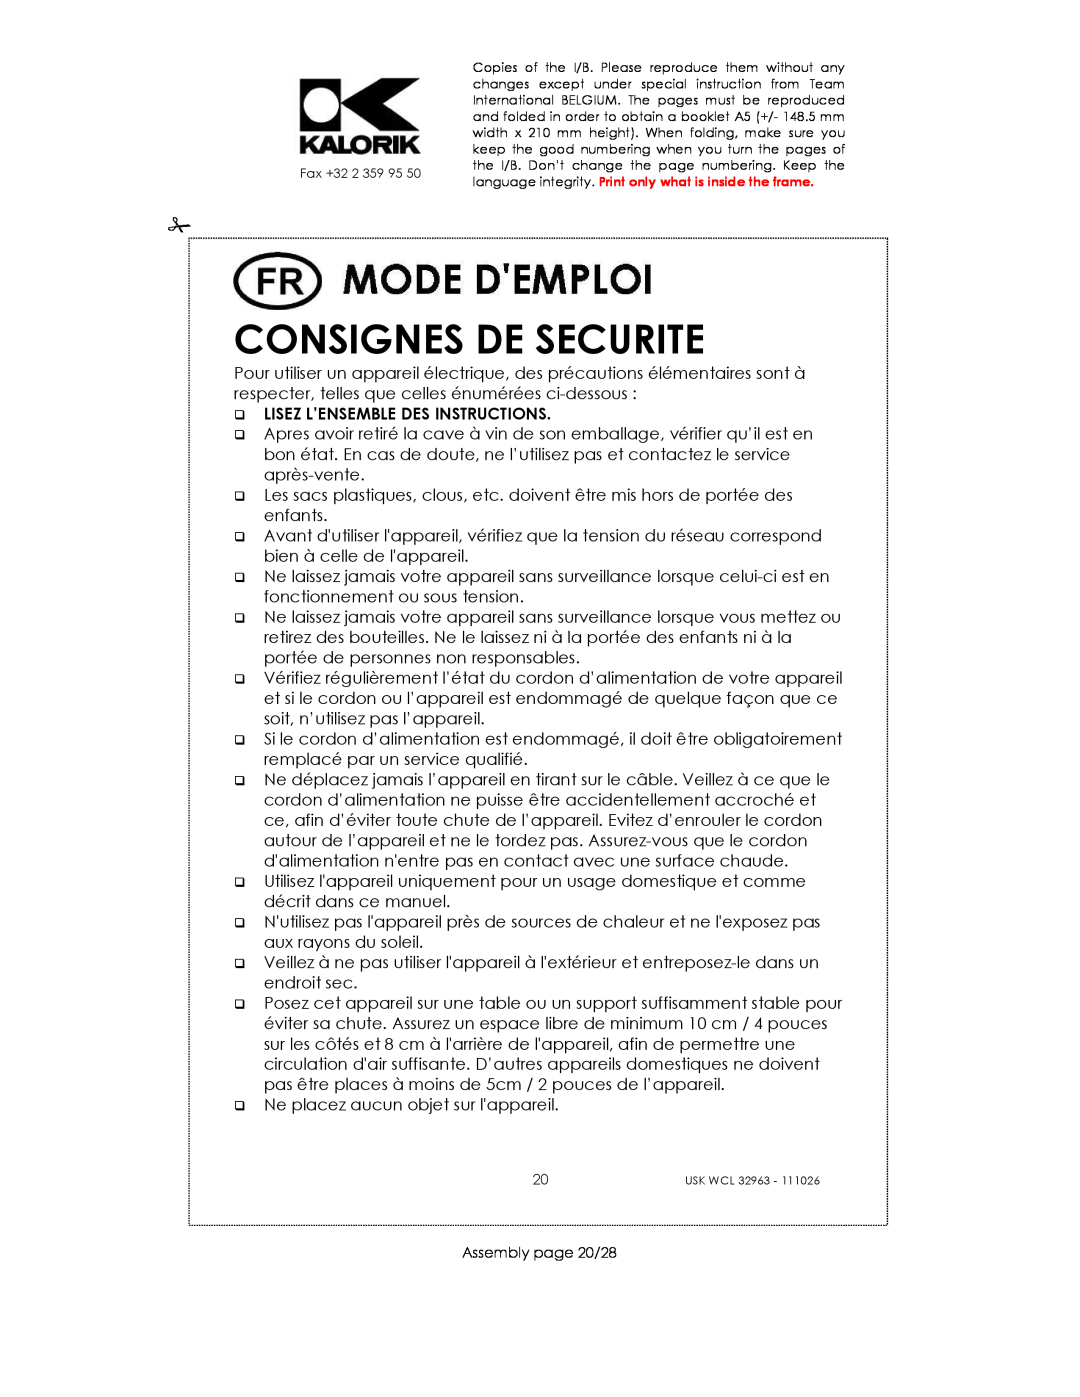 Kalorik USK WCL 32963 manual Consignes De Securite, Lisez L’Ensemble Des Instructions 